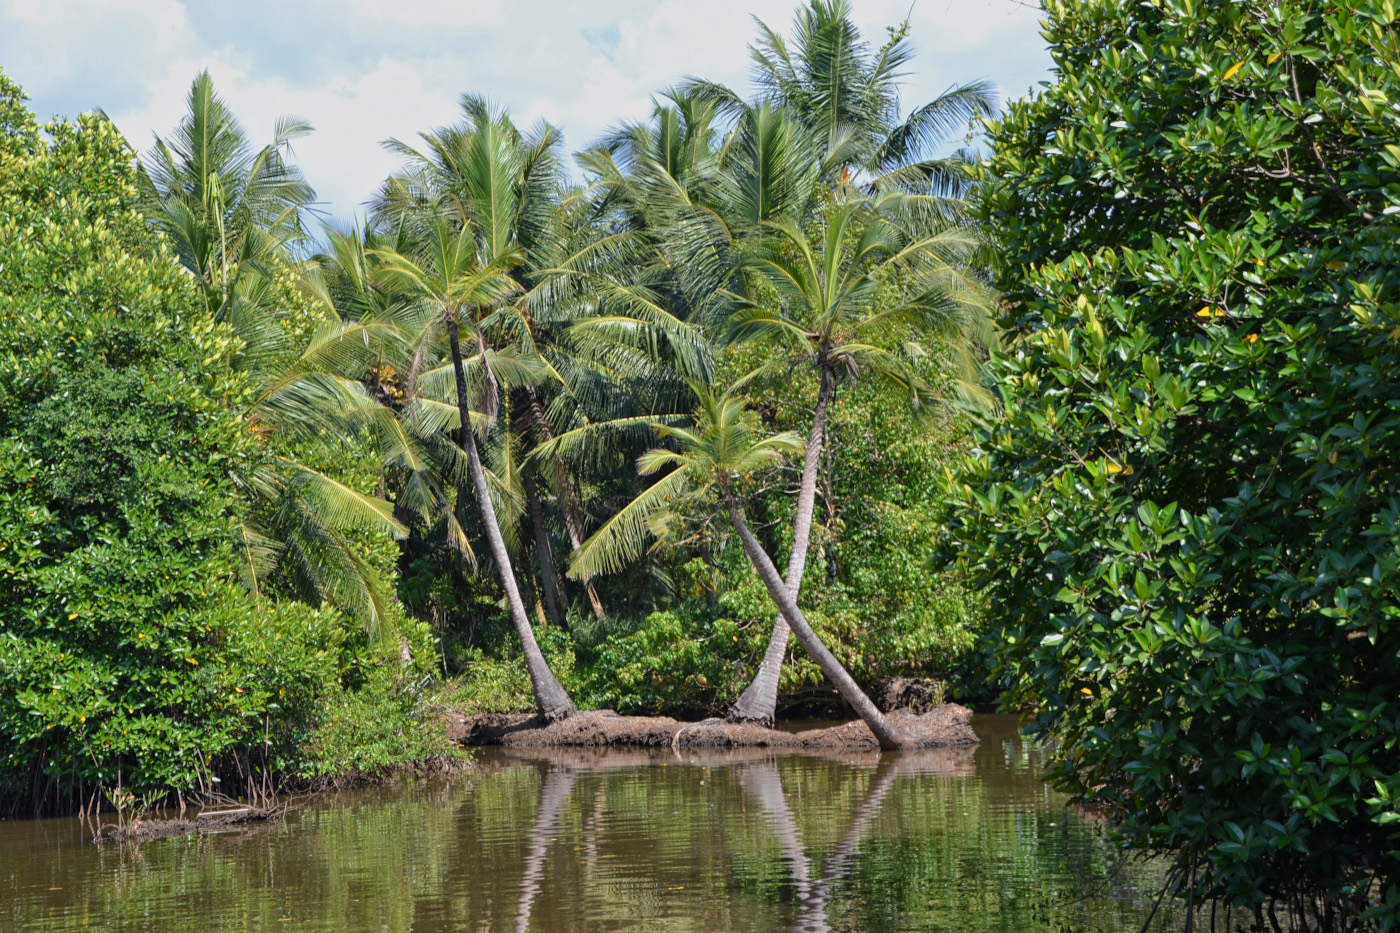 Фото 1. Пальмы на Шри-Ланке. Параметры съемки: В=1/200 сек., f/7.1, ISO 100, ФР=55 мм.